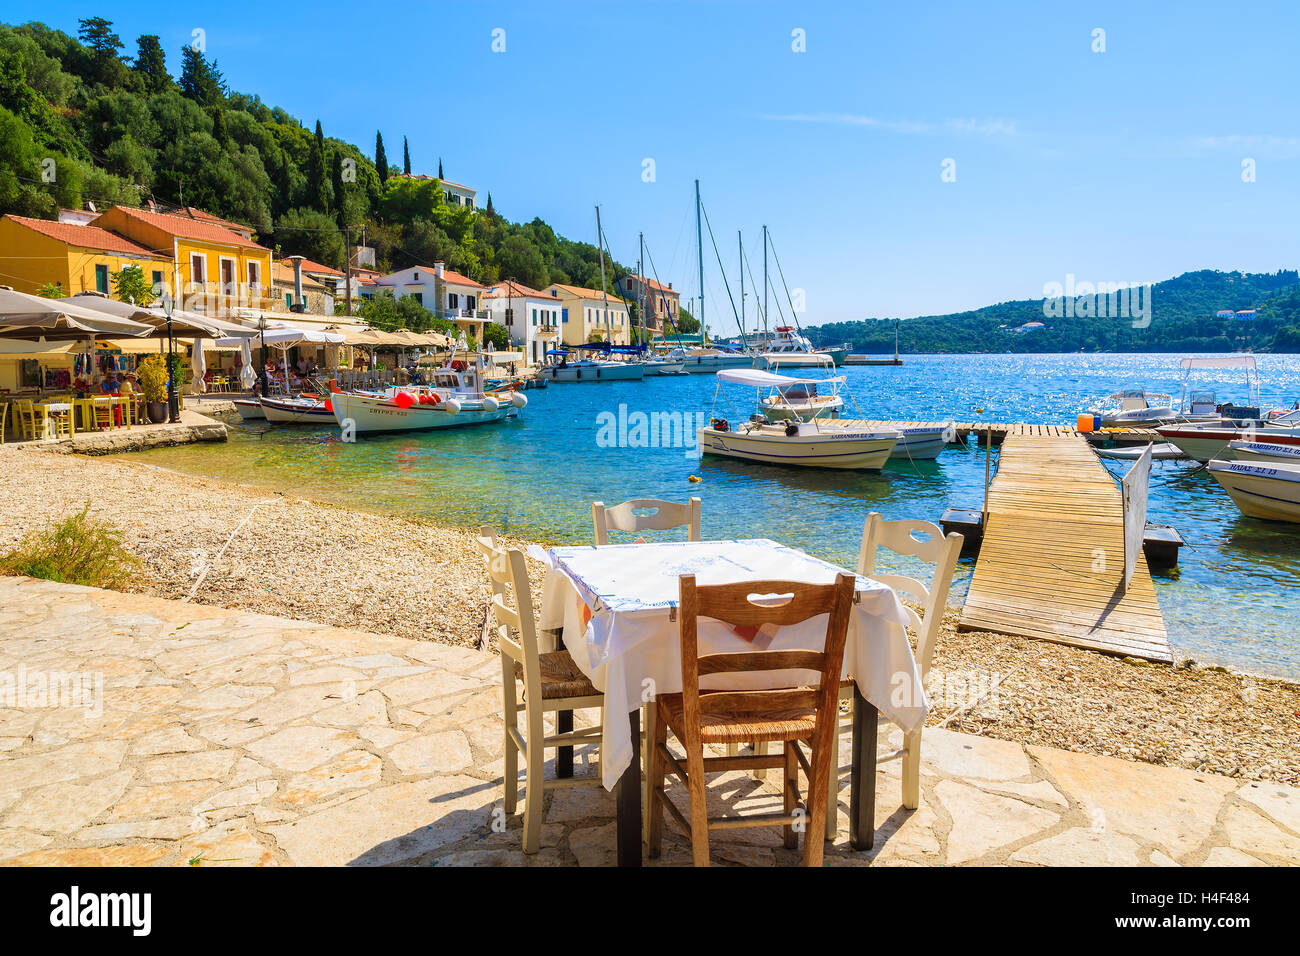 KIONI Hafen, Insel ITHAKA - SEP 19, 2014: Tabelle in griechisches Restaurant im Hafen Kioni. Griechenland ist ein sehr beliebtes Urlaubsziel in Europa. Stockfoto